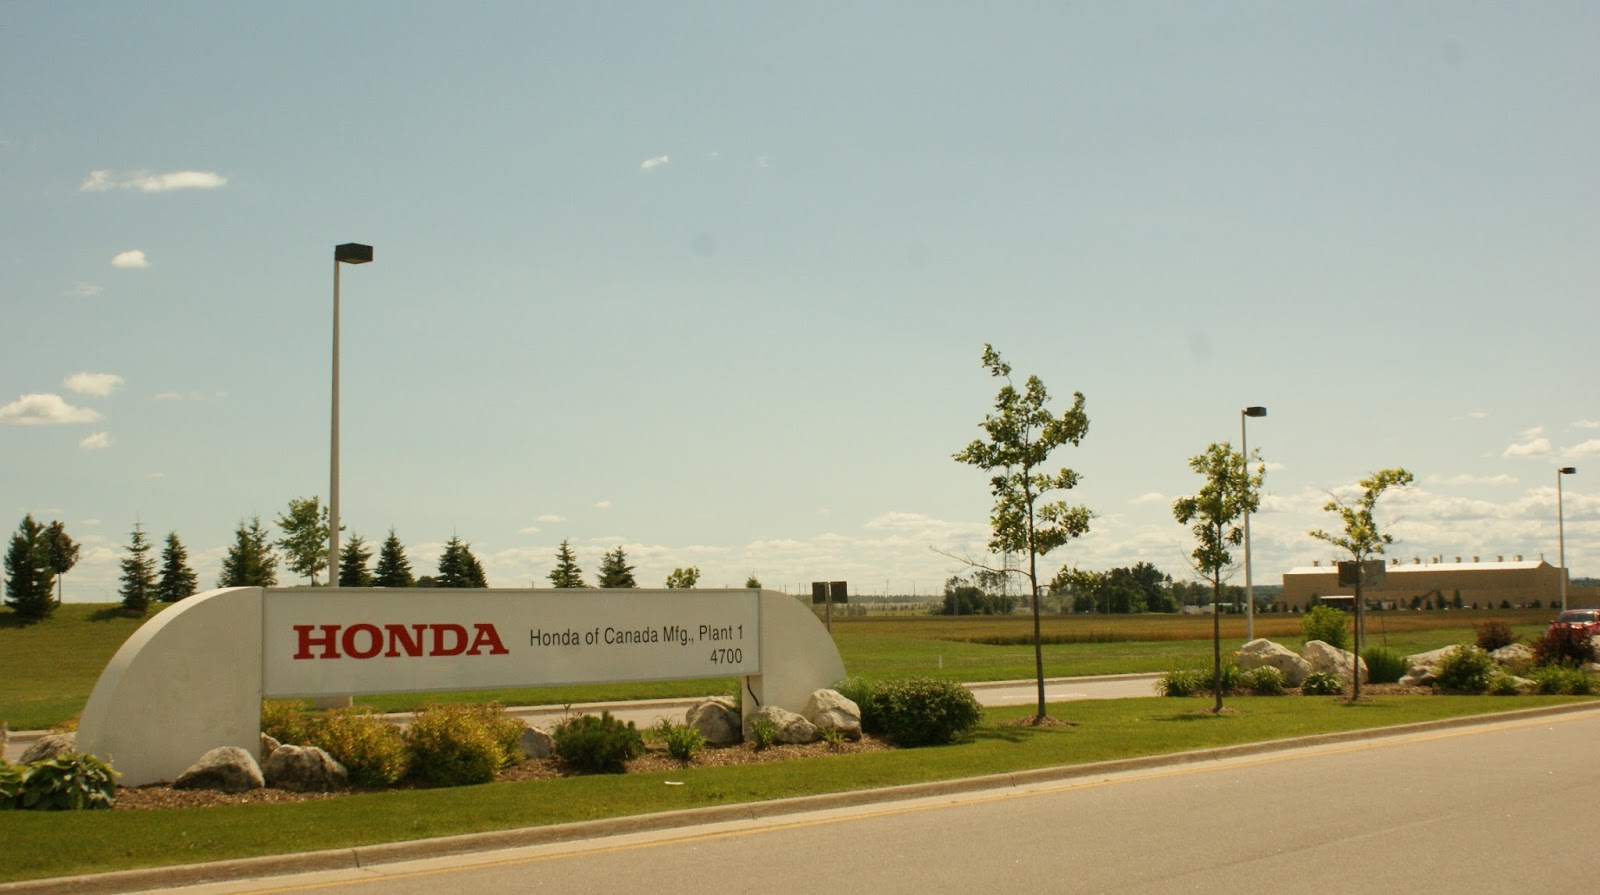 Honda plant in alliston on #2